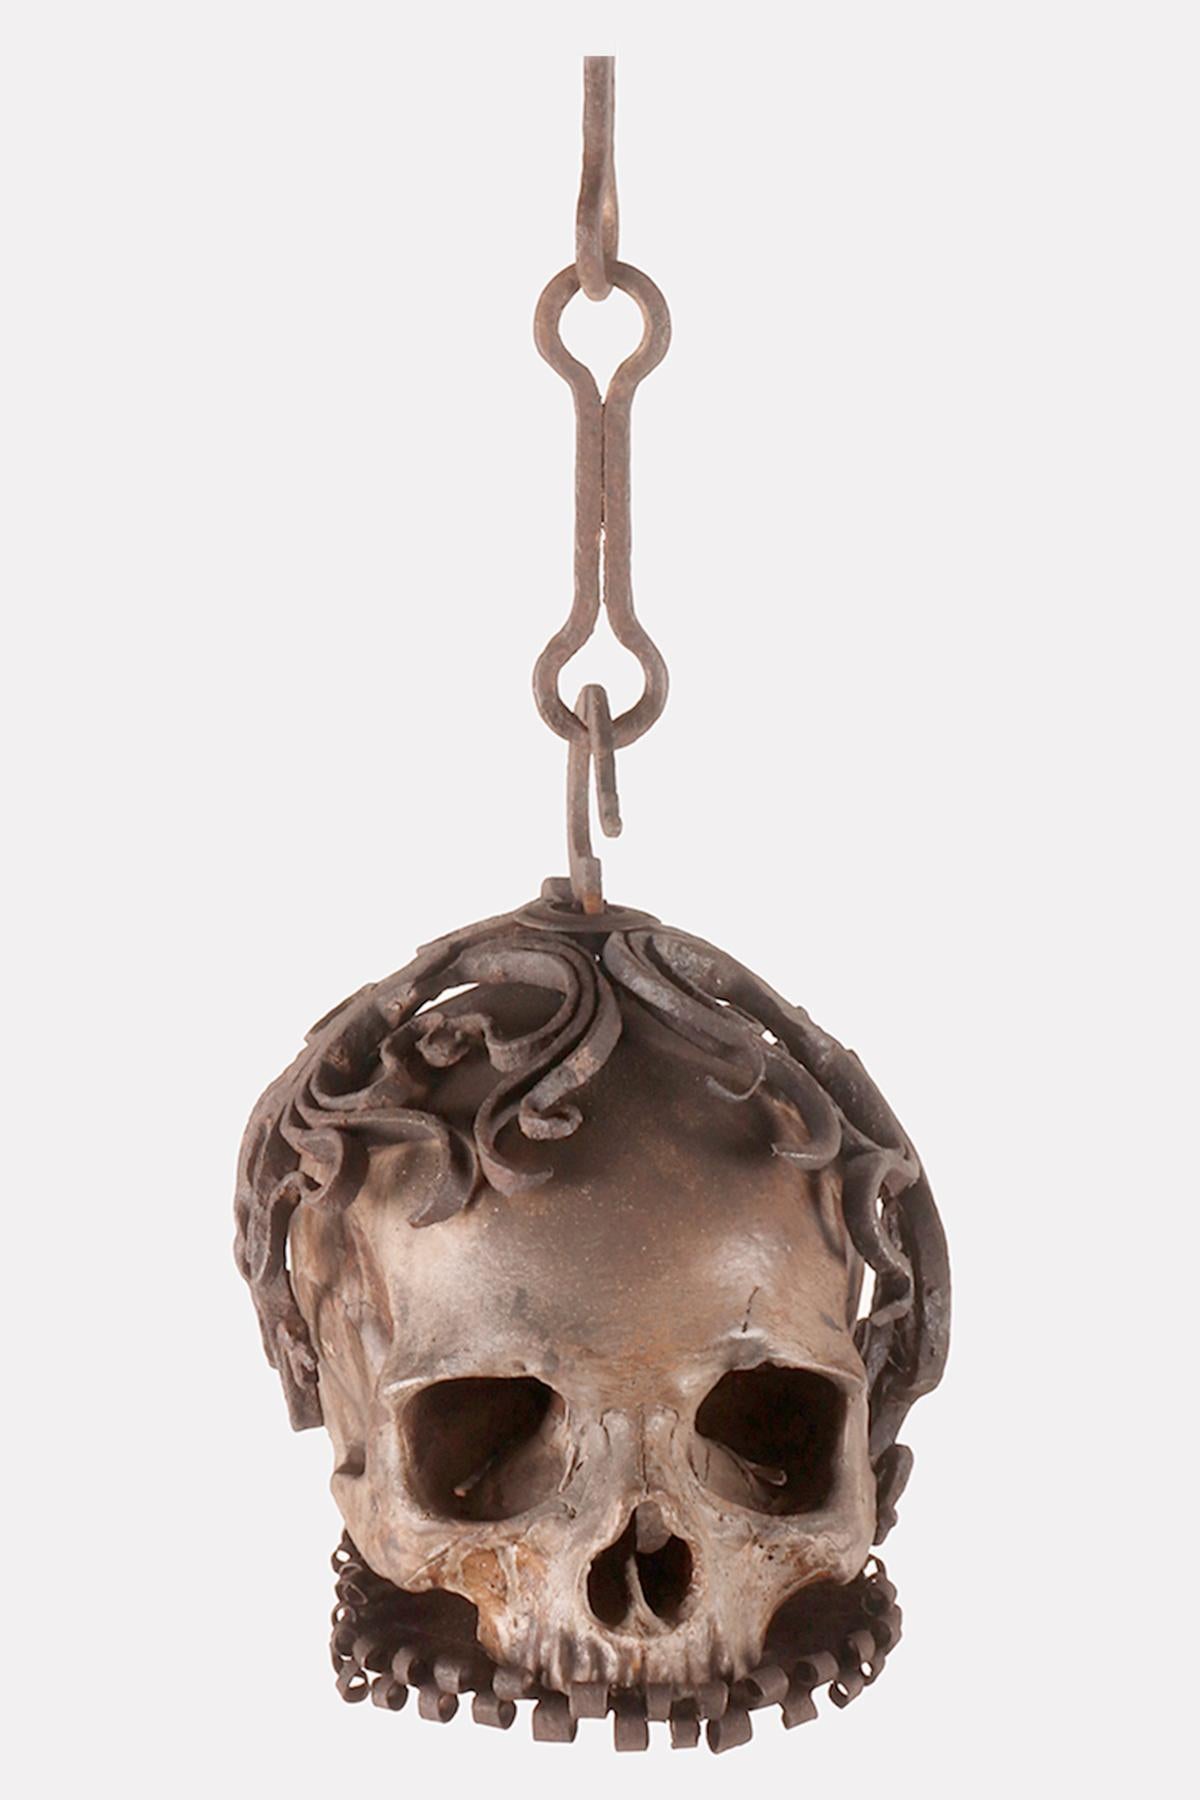 Ein seltenes Beispiel für Memento Mori aus der Wunderkammer, das einen Sch�ädel in einem geschmiedeten Eisengestell mit einer Kette zum Aufhängen zeigt. Die Skulptur ist aus Scagliola-Gips mit einem hohen künstlerischen und ausführenden Niveau